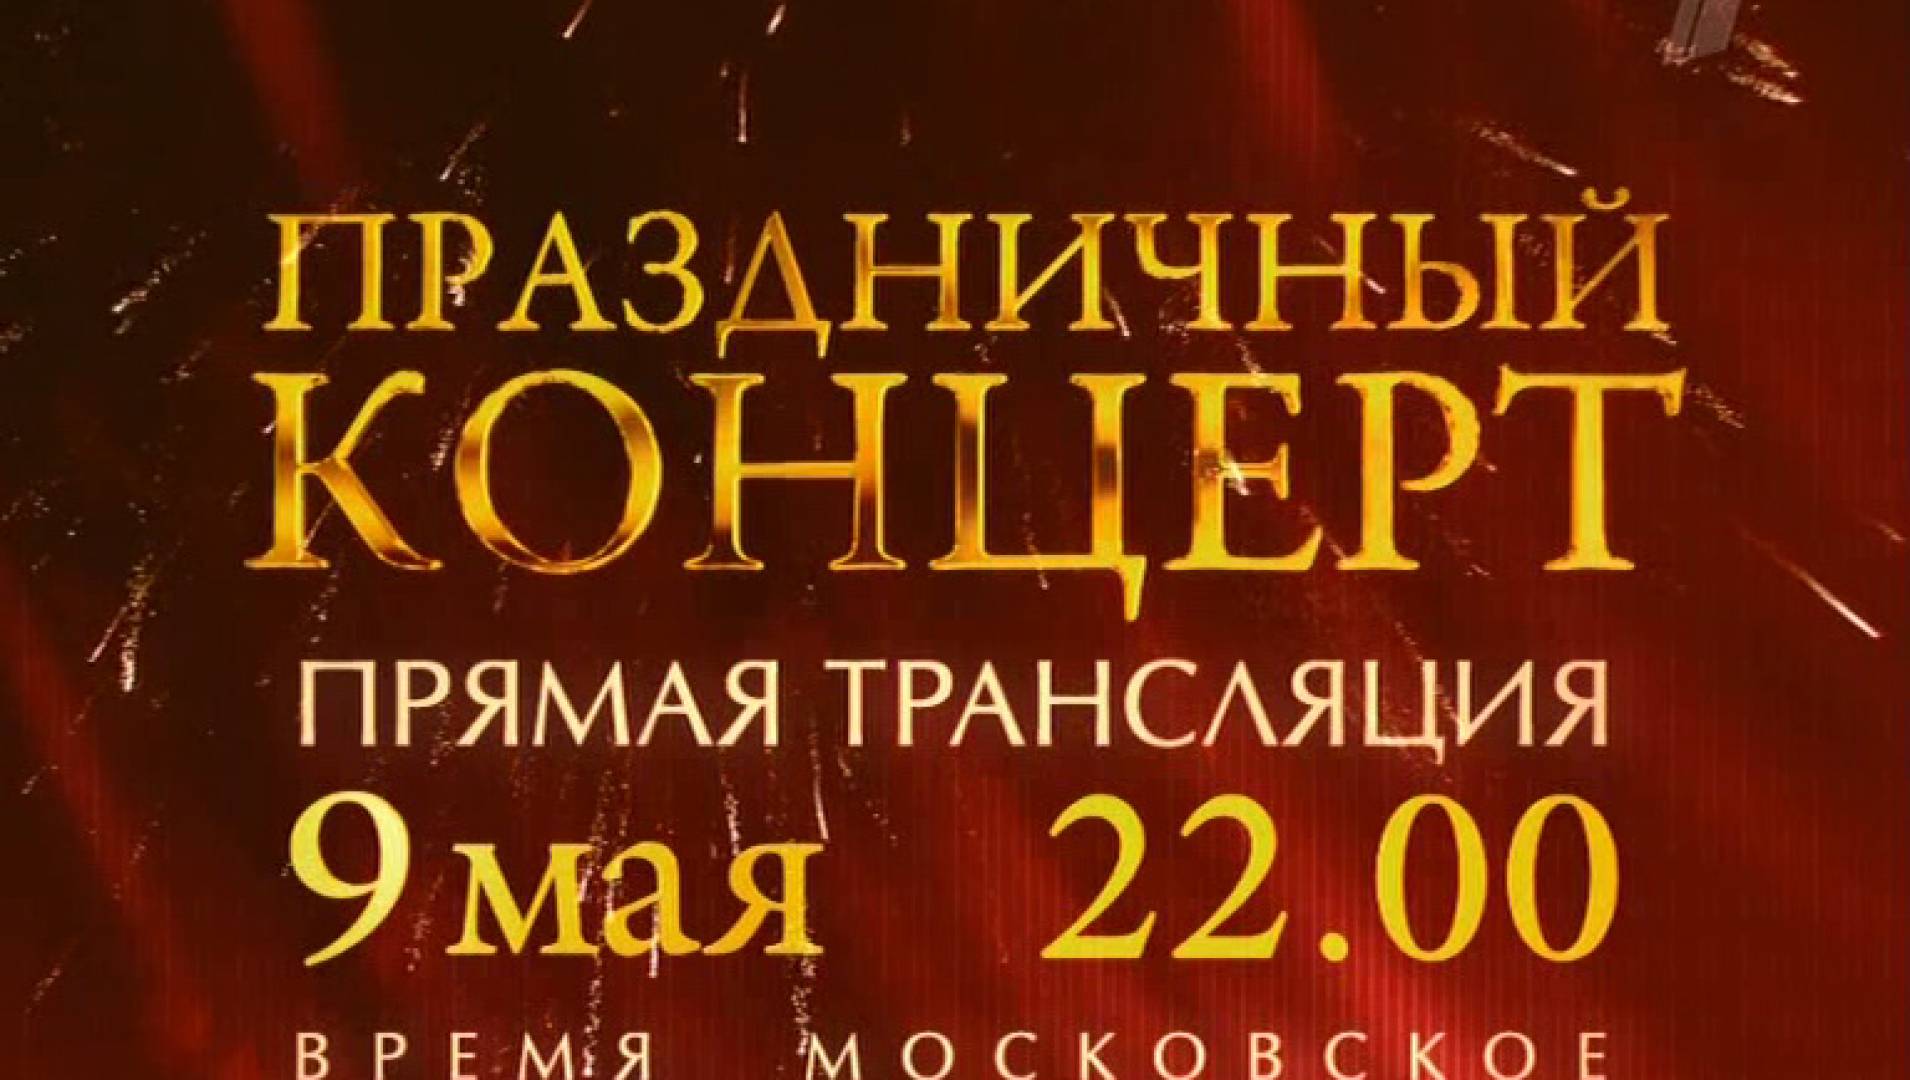 Праздничный концерт к 9 мая. 9 Мая концерт в Москве. Афиша концерта к 9 мая шаблоны. Торжественный концерт «время быть вместе». Афиши на праздничный концерт 9 мая 2023г.